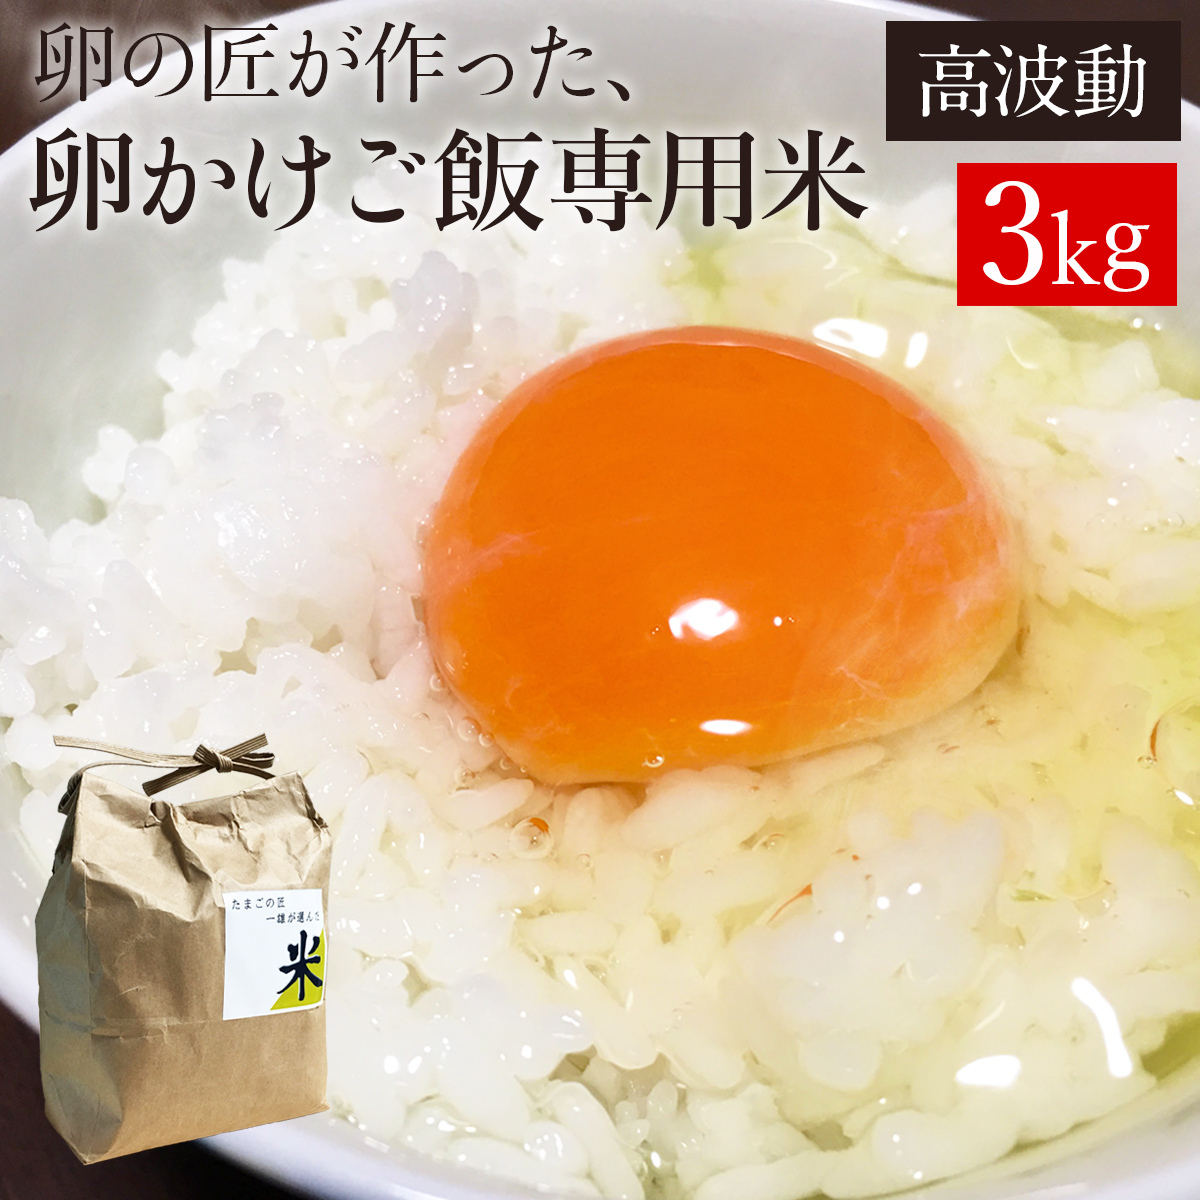 お米 卵かけご飯専用米3kg 高波動米 卵の匠が追求した卵かけご飯に合う 